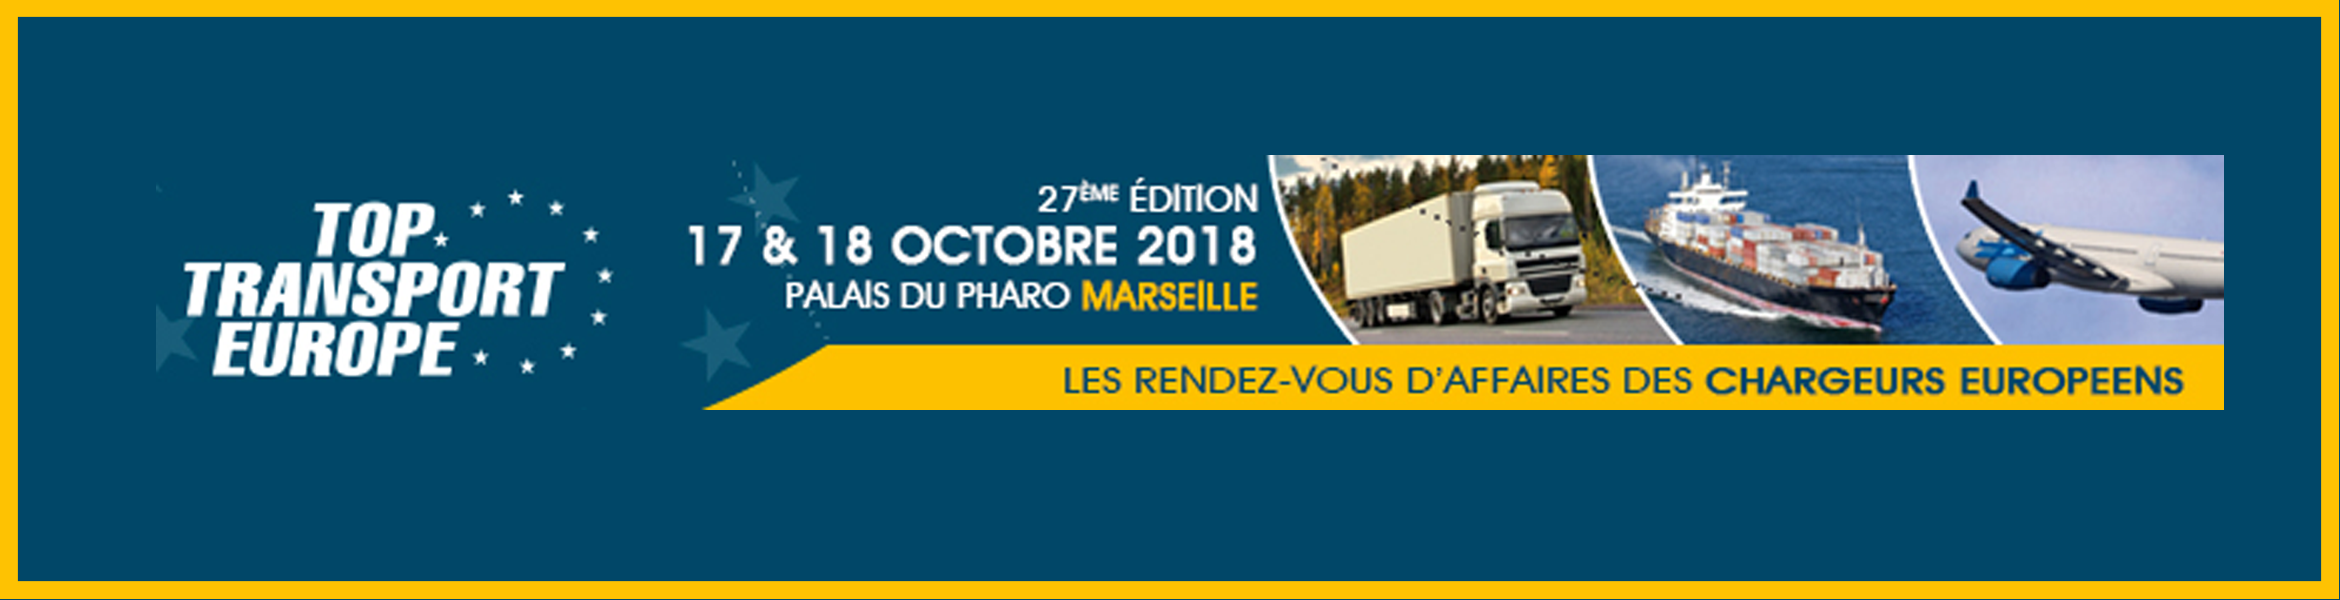 Un besoin en transport & logistique ? Venez nous rencontrer au salon Top Transport Europe les 17 et 18 octobre 2018.